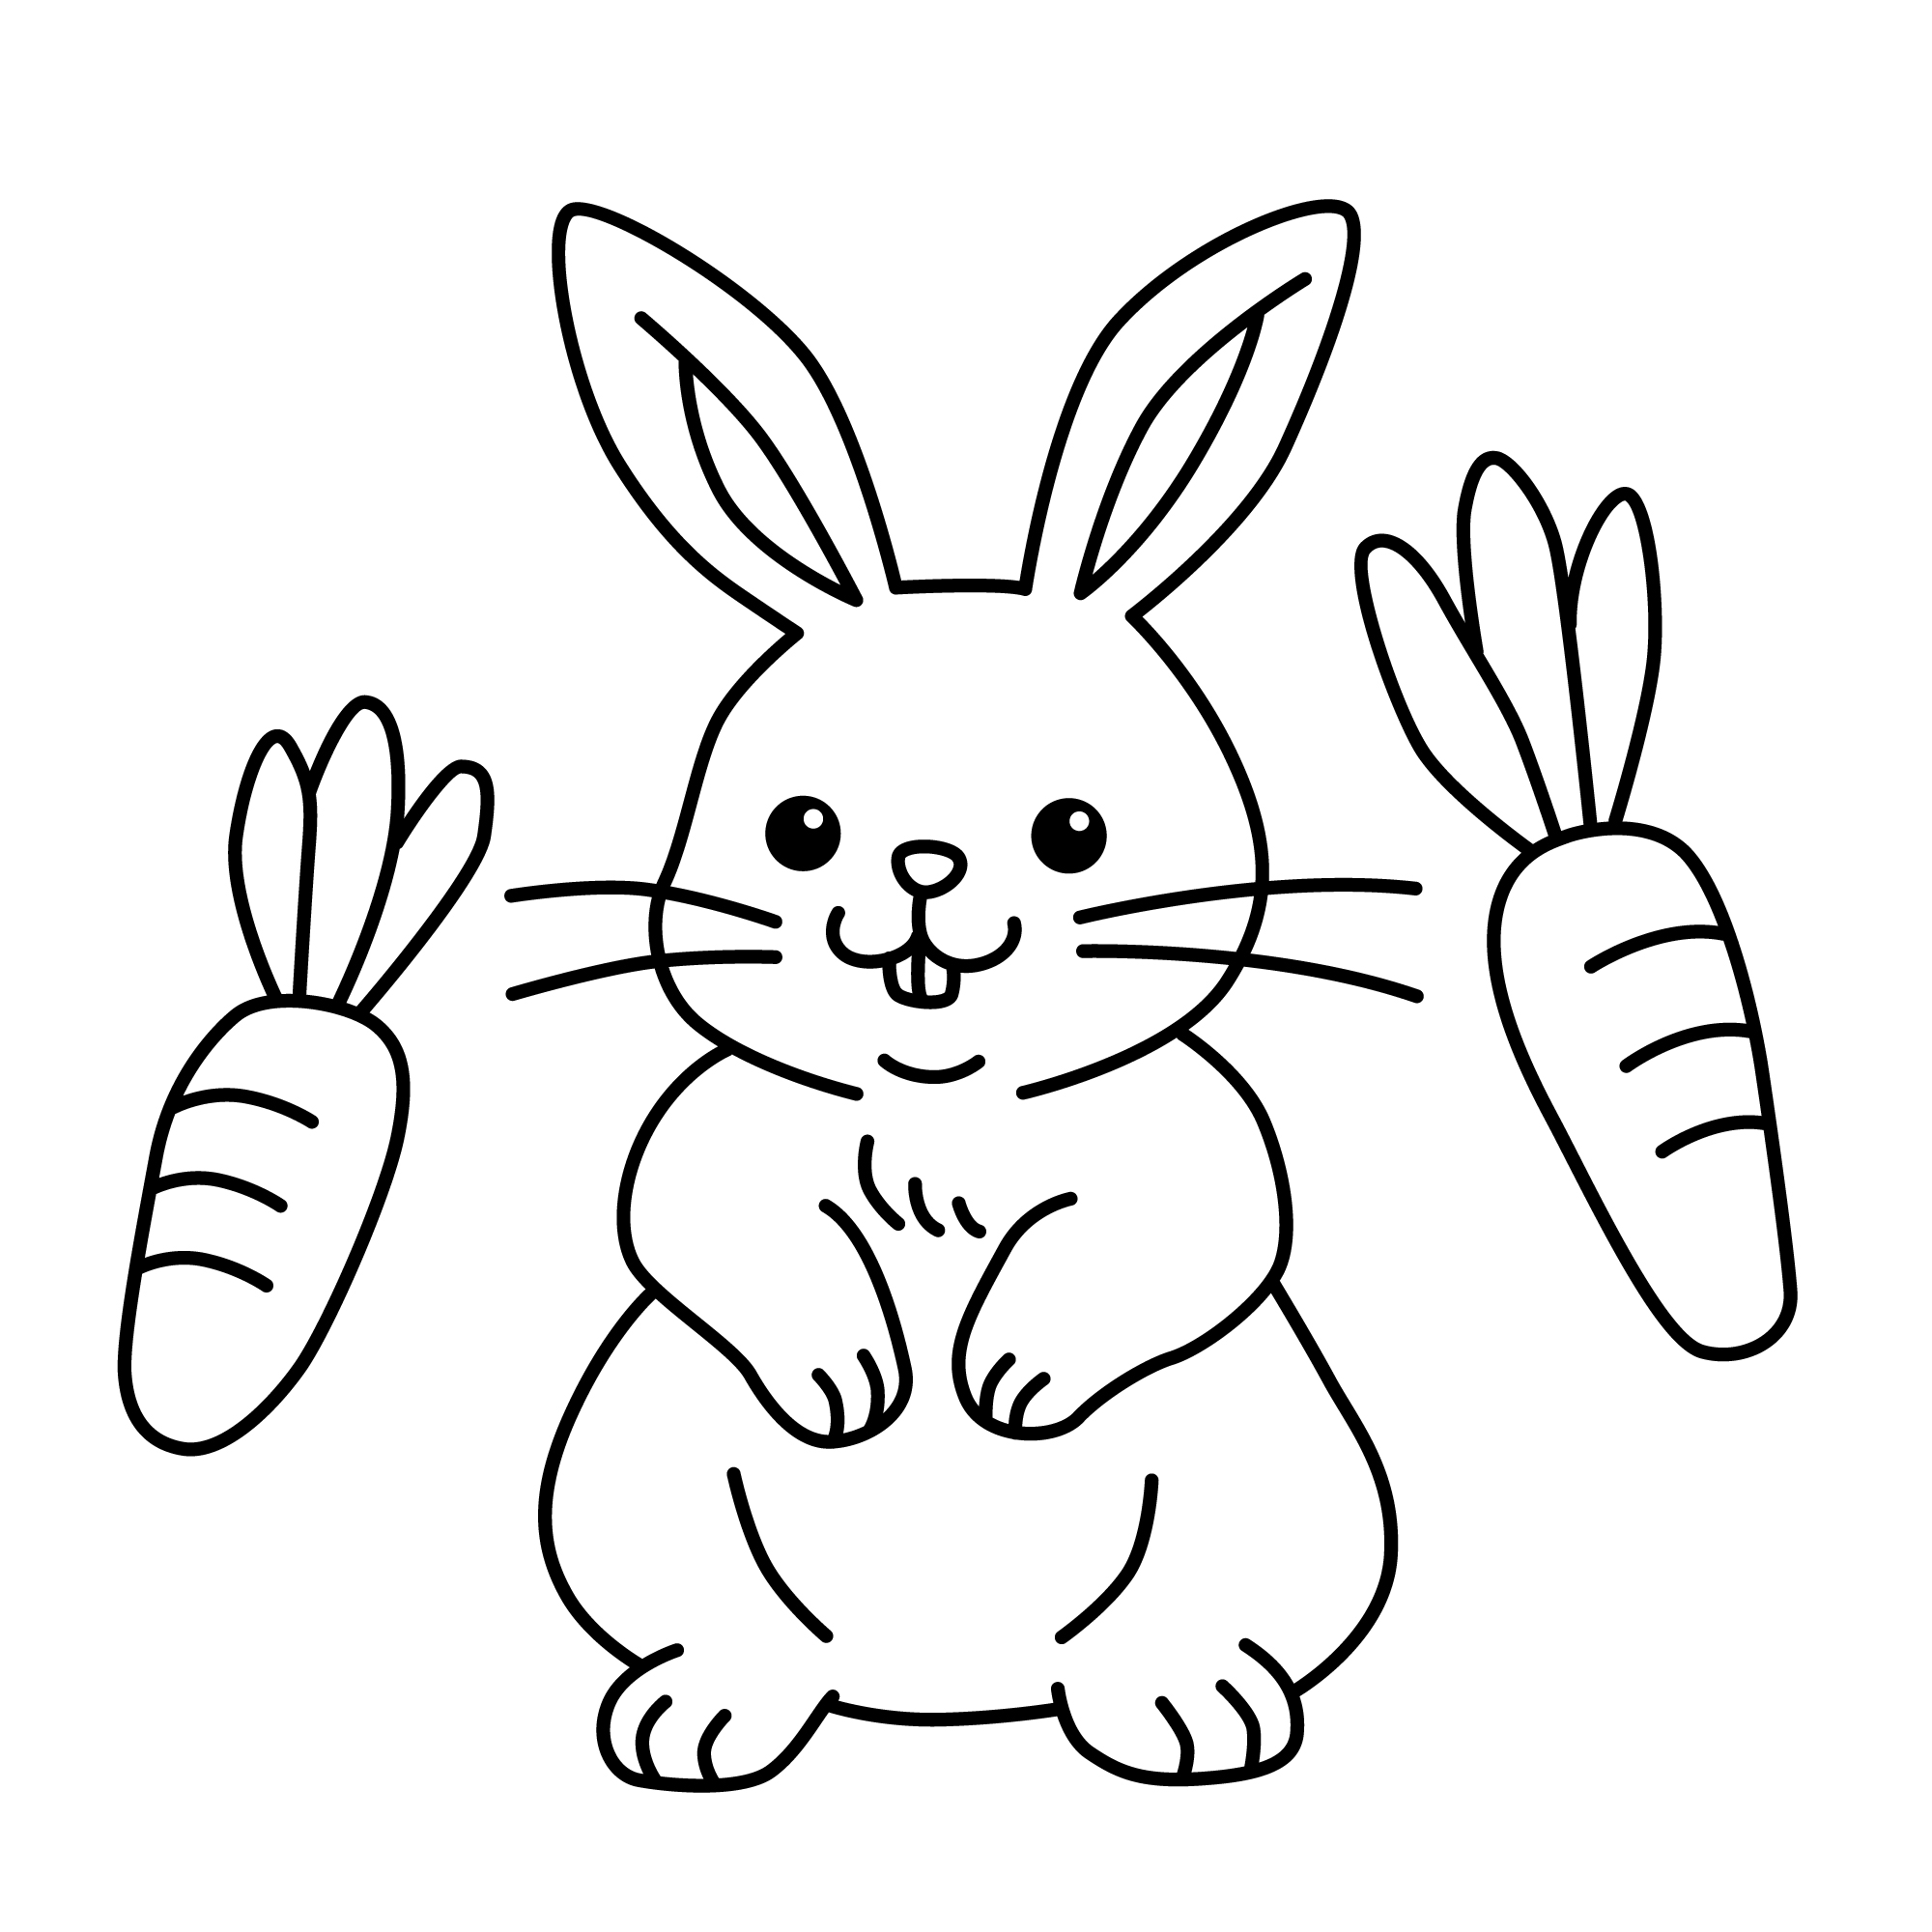 Раскраска заяц с морковками формата А4 в высоком качестве